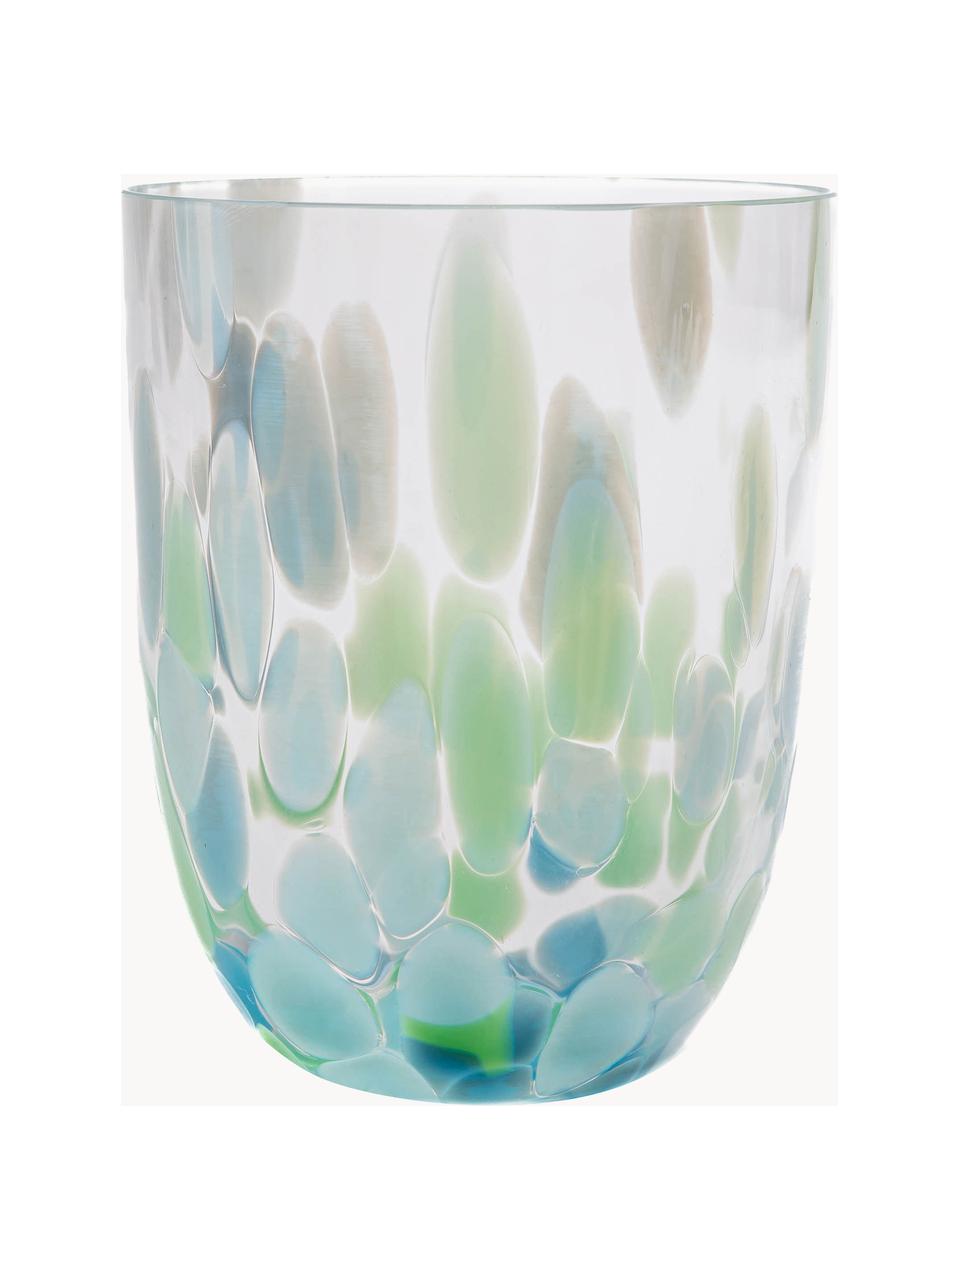 Sada ručně vyrobených sklenic Big Confetti, 6 dílů, Sklo, Odstíny modré, mátově zelená, transparentní, Ø 7 cm, V 10 cm, 250 ml